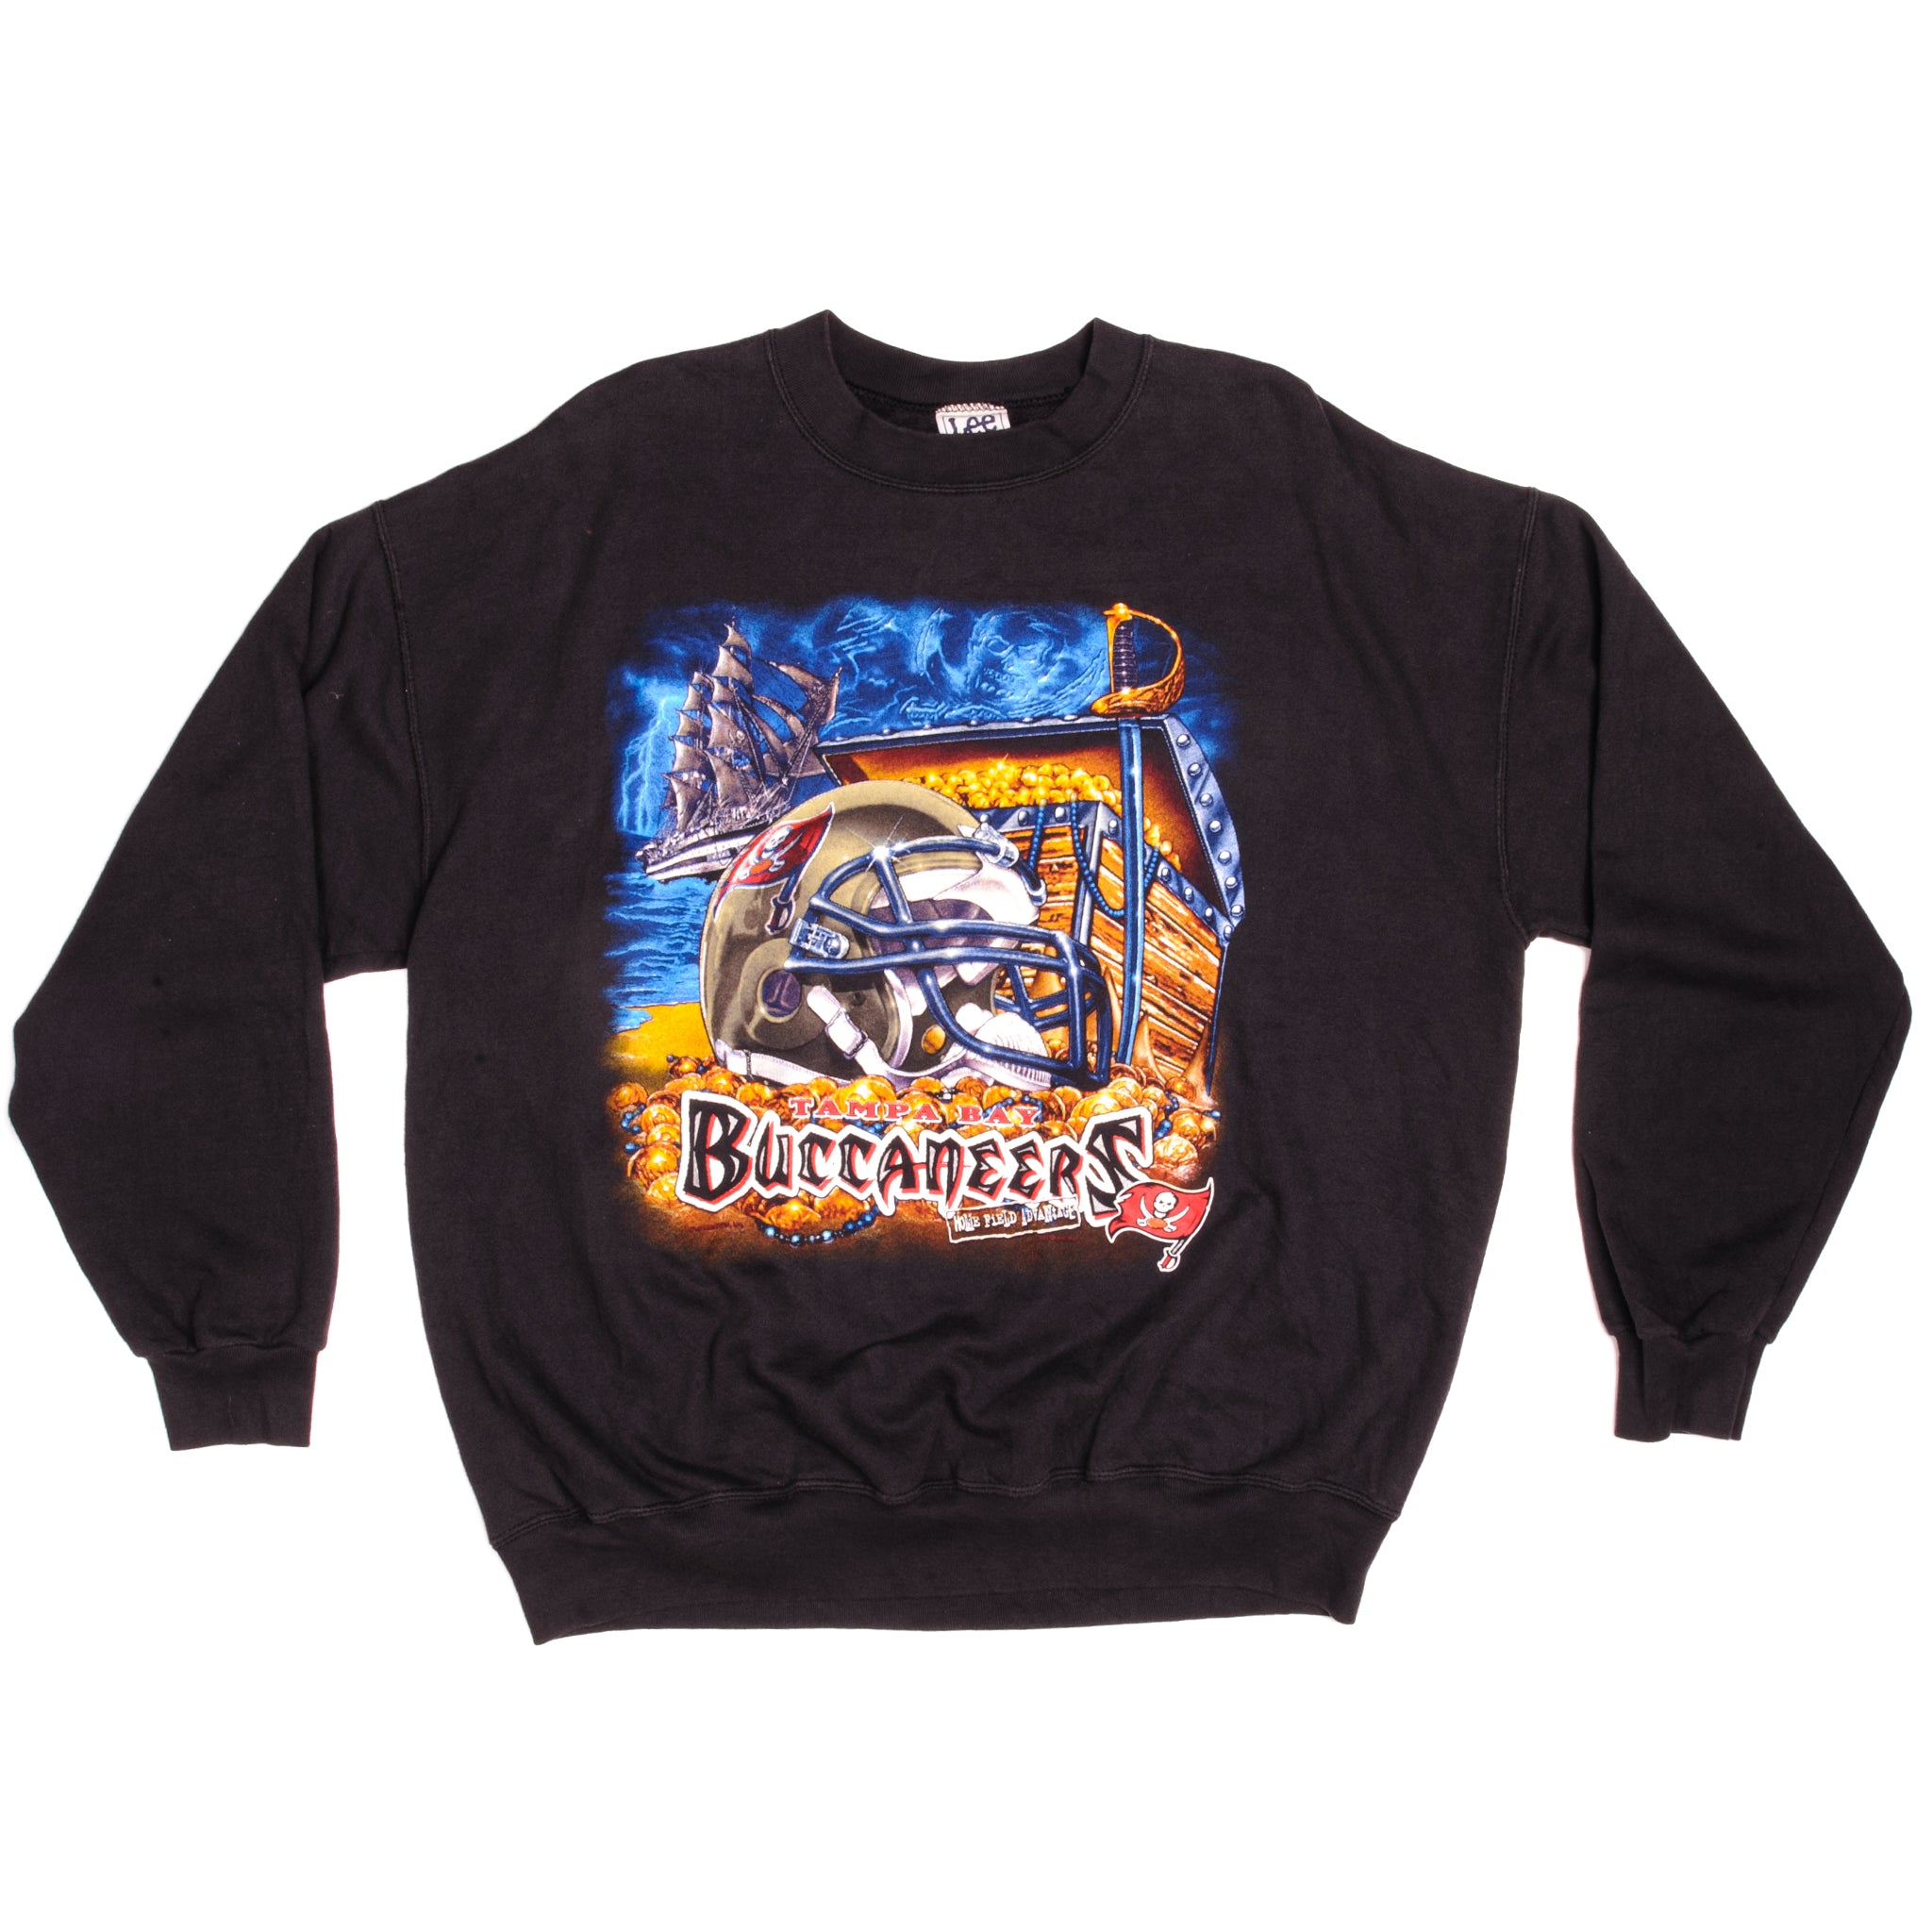 Bucs Buccaneers Vintage T-Shirt, Retro Bucs Shirt, Buccaneer - Inspire  Uplift